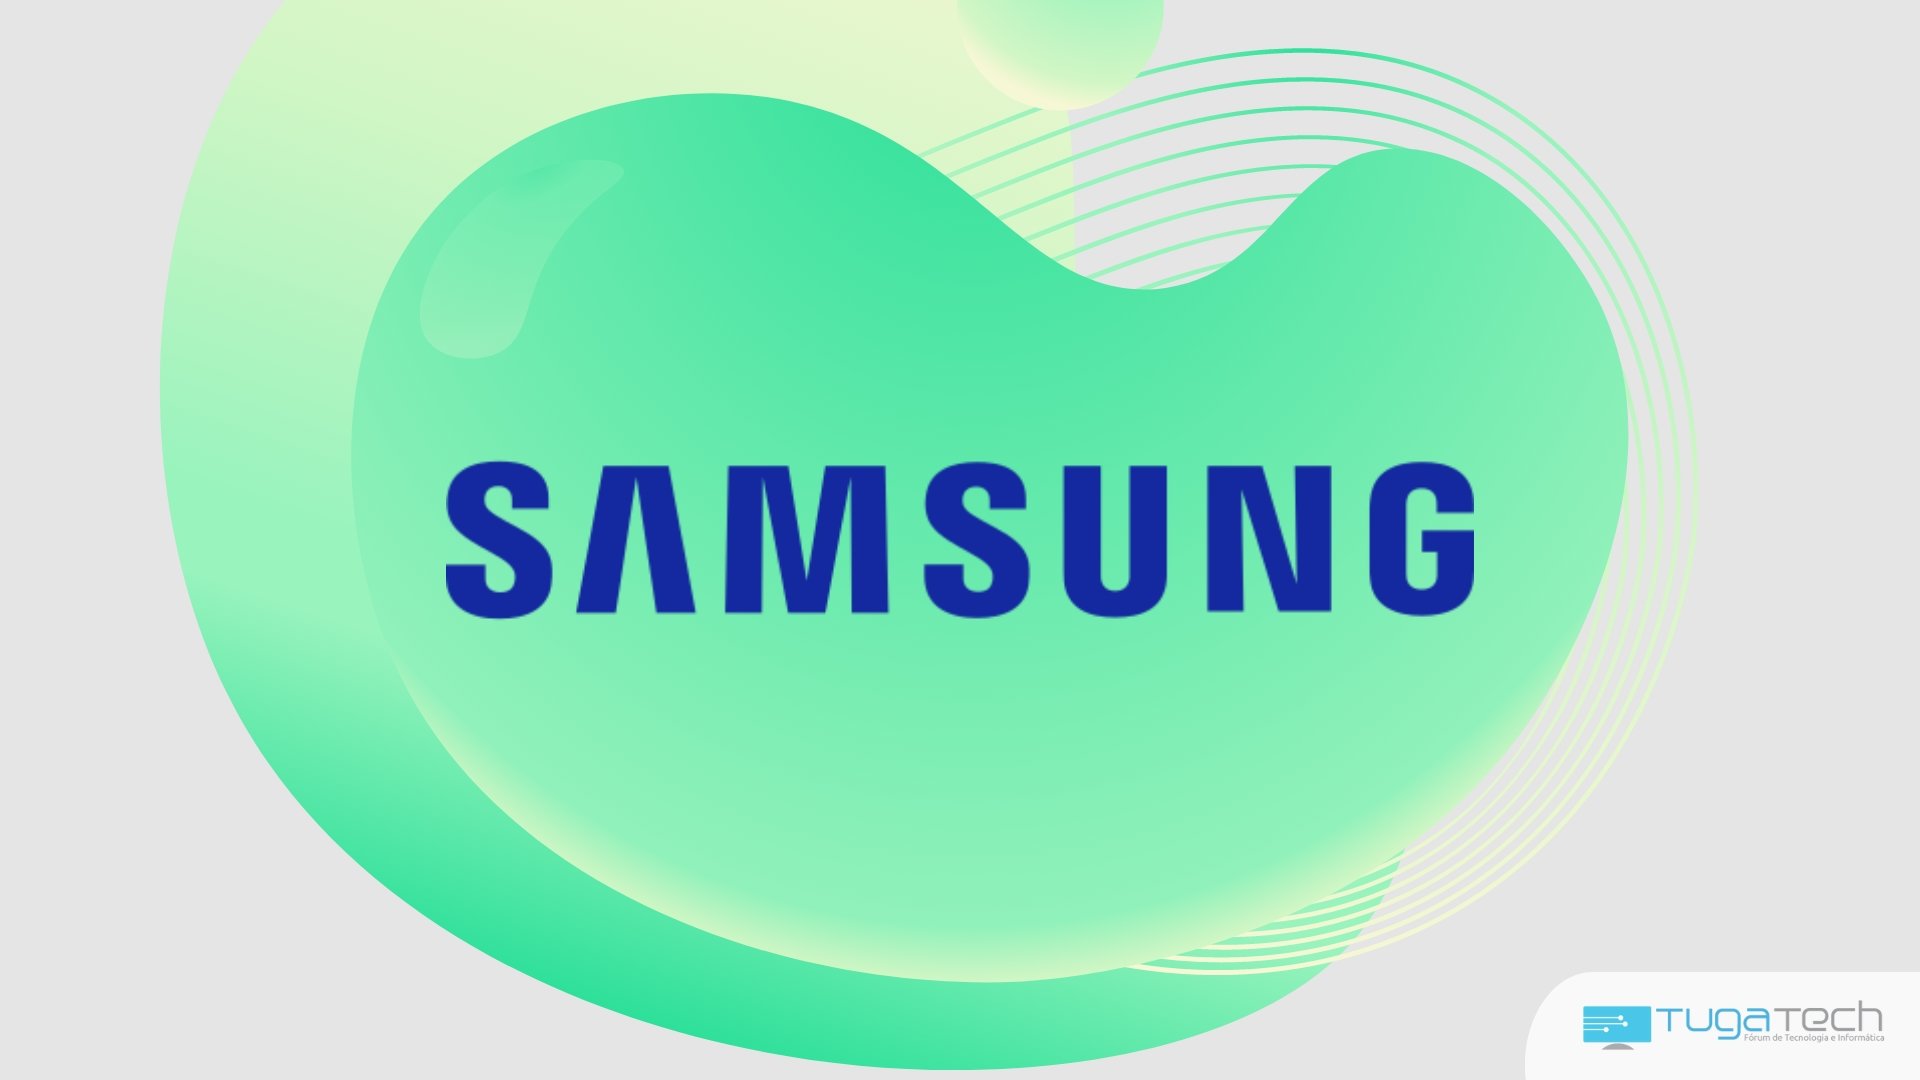 Samsung sobre fundo verde